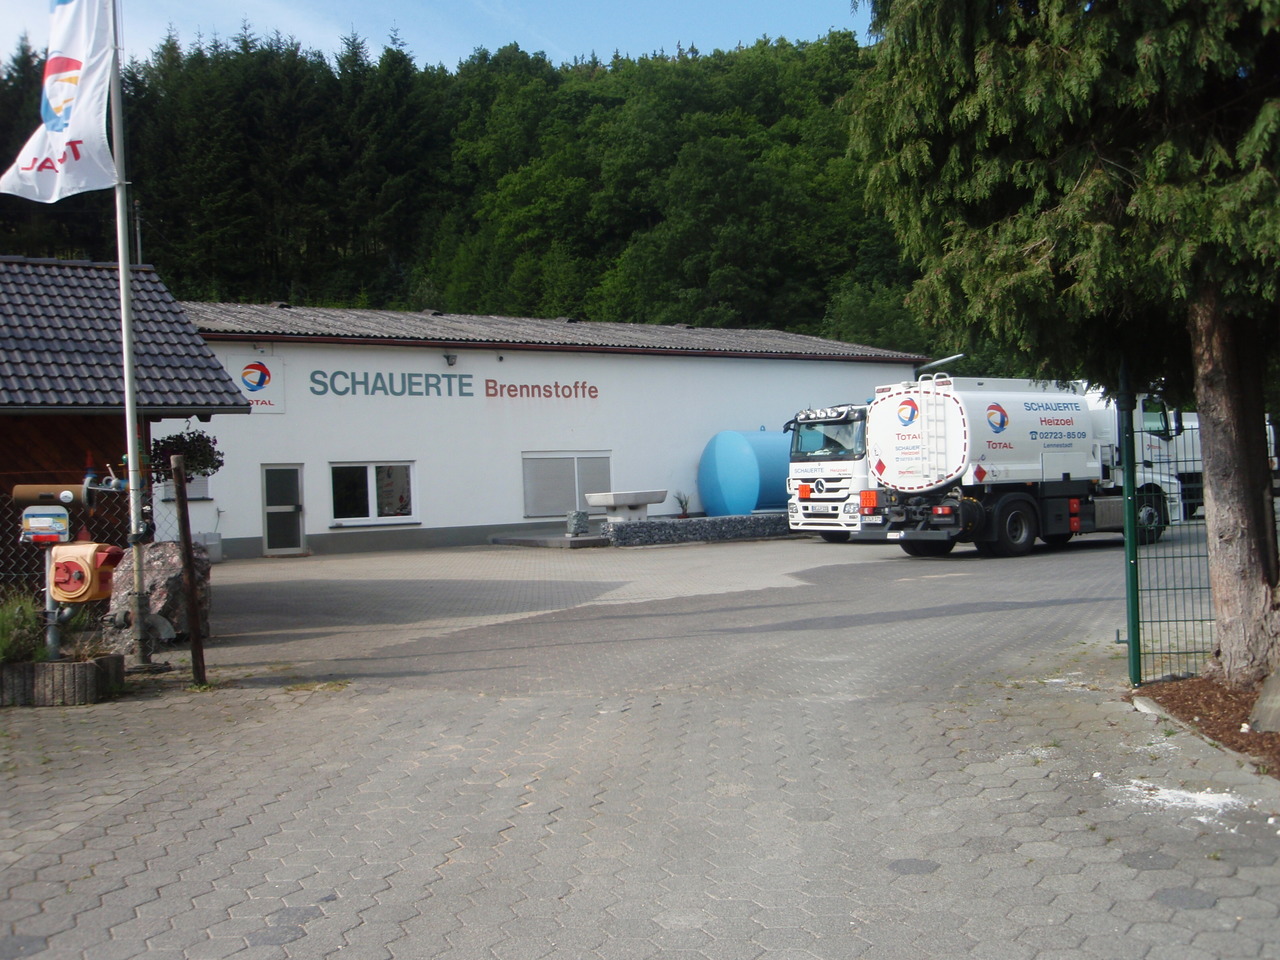 Betriebsgelände von Schauerte Brennstoffe am Ortseingang von Saalhausen, wenn man aus Richtung Schmallenberg kommt.